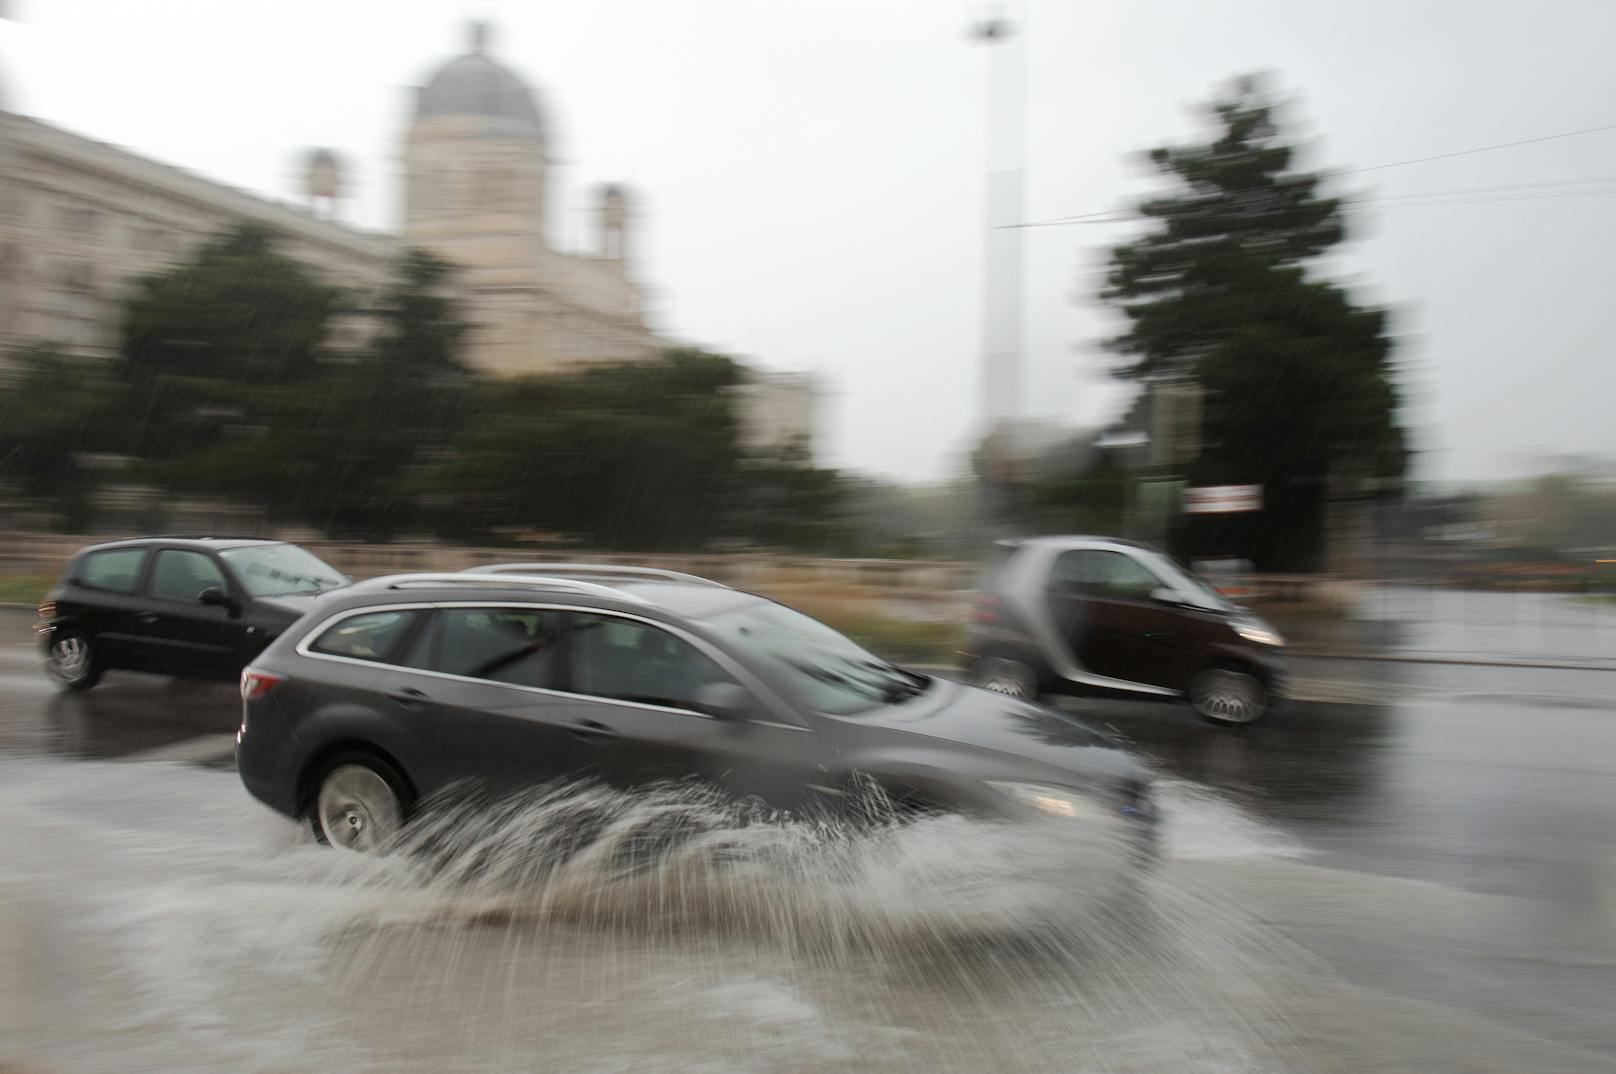 Symbolbild. Fahrzeuge verursachen Wasserfontänen während des fahrens über eine überflutete Straße am Museumsplatz in Wien am 25. September 2020.